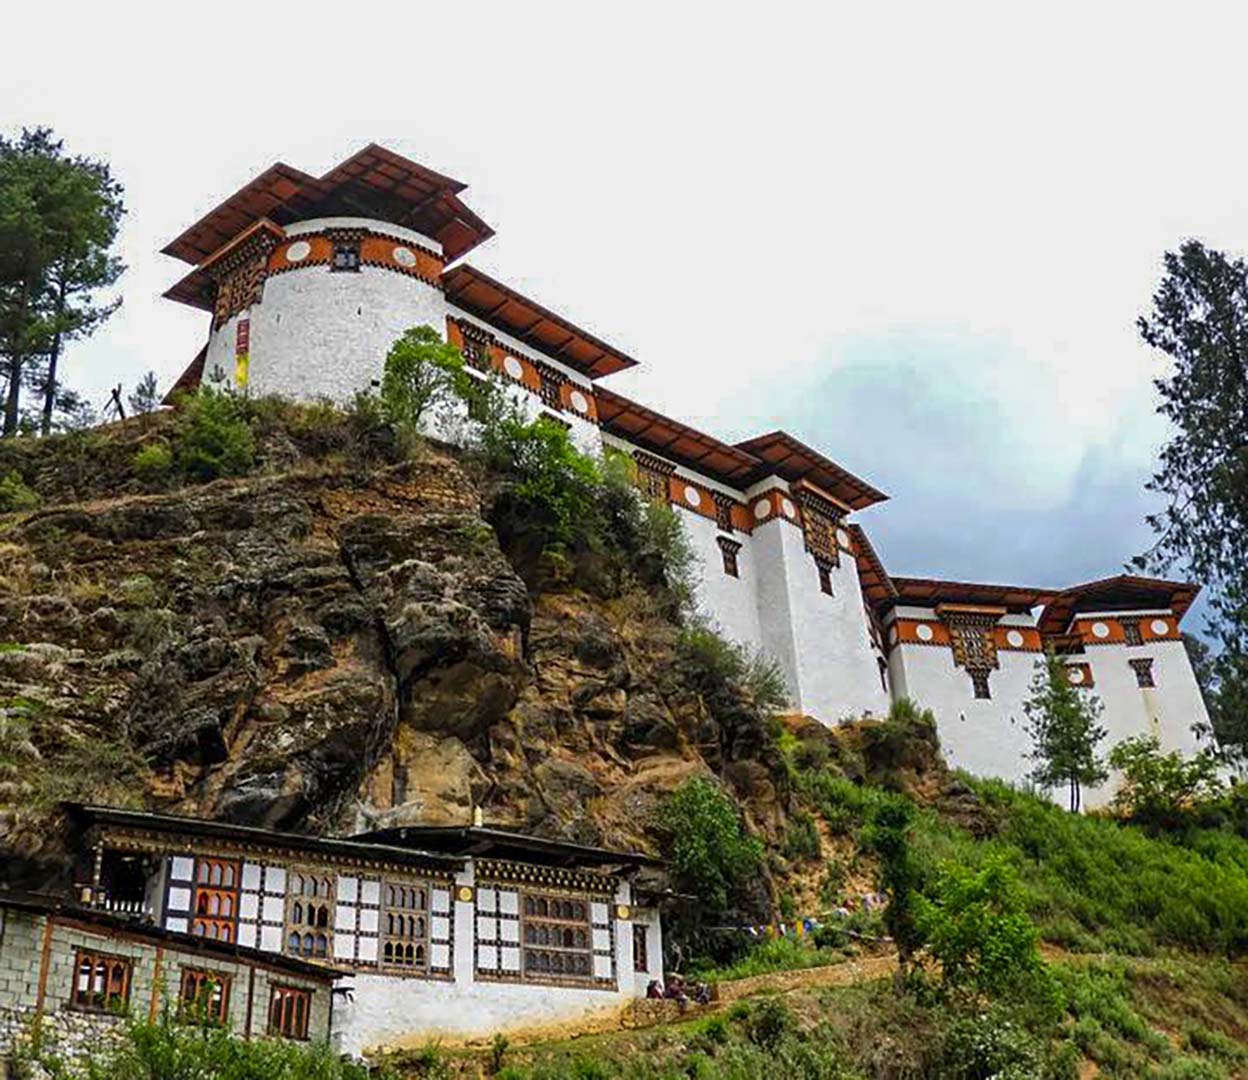 Drukgyel Dzong in Paro